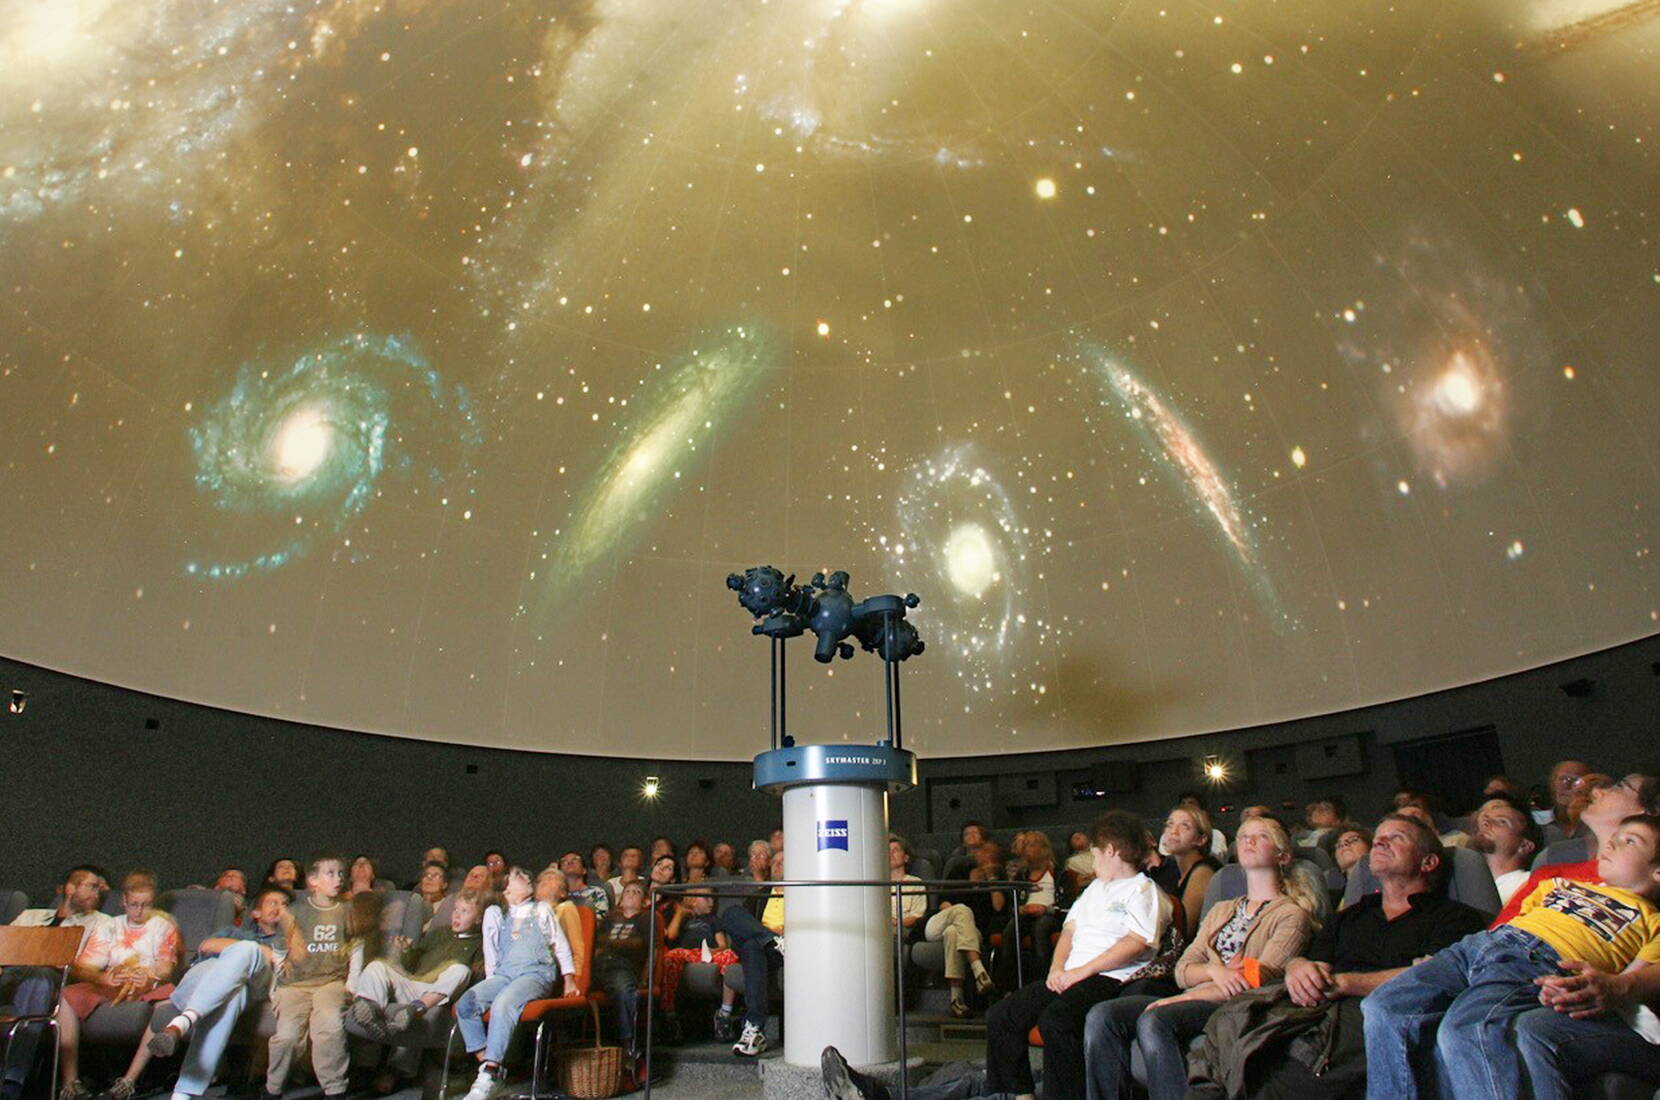 Gita in famiglia – Avete voglia di un viaggio nello spazio? Sotto la cupola del Planetario Bodensee, comode poltrone invitano a fare un viaggio virtuale nel cielo notturno.